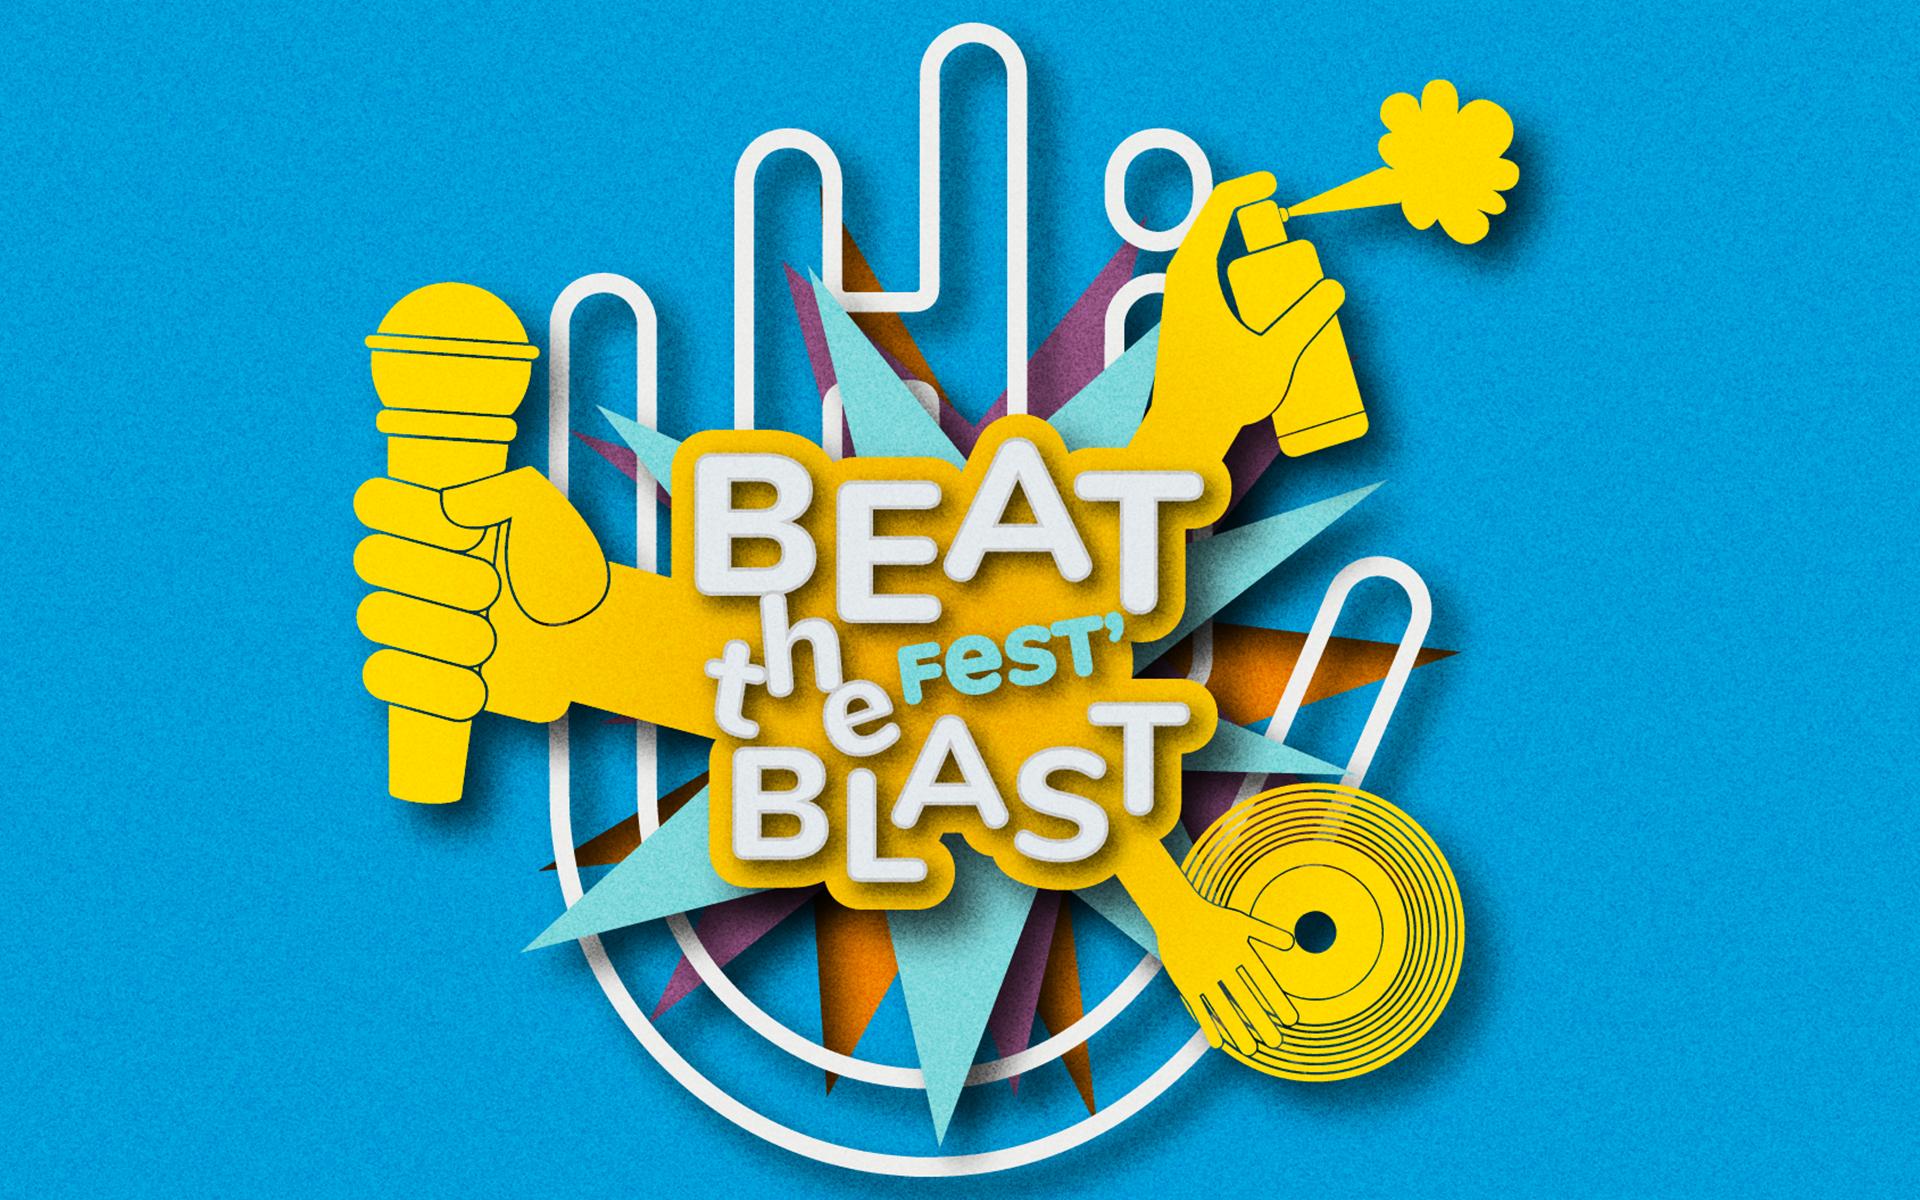 bonus beat blast 2011